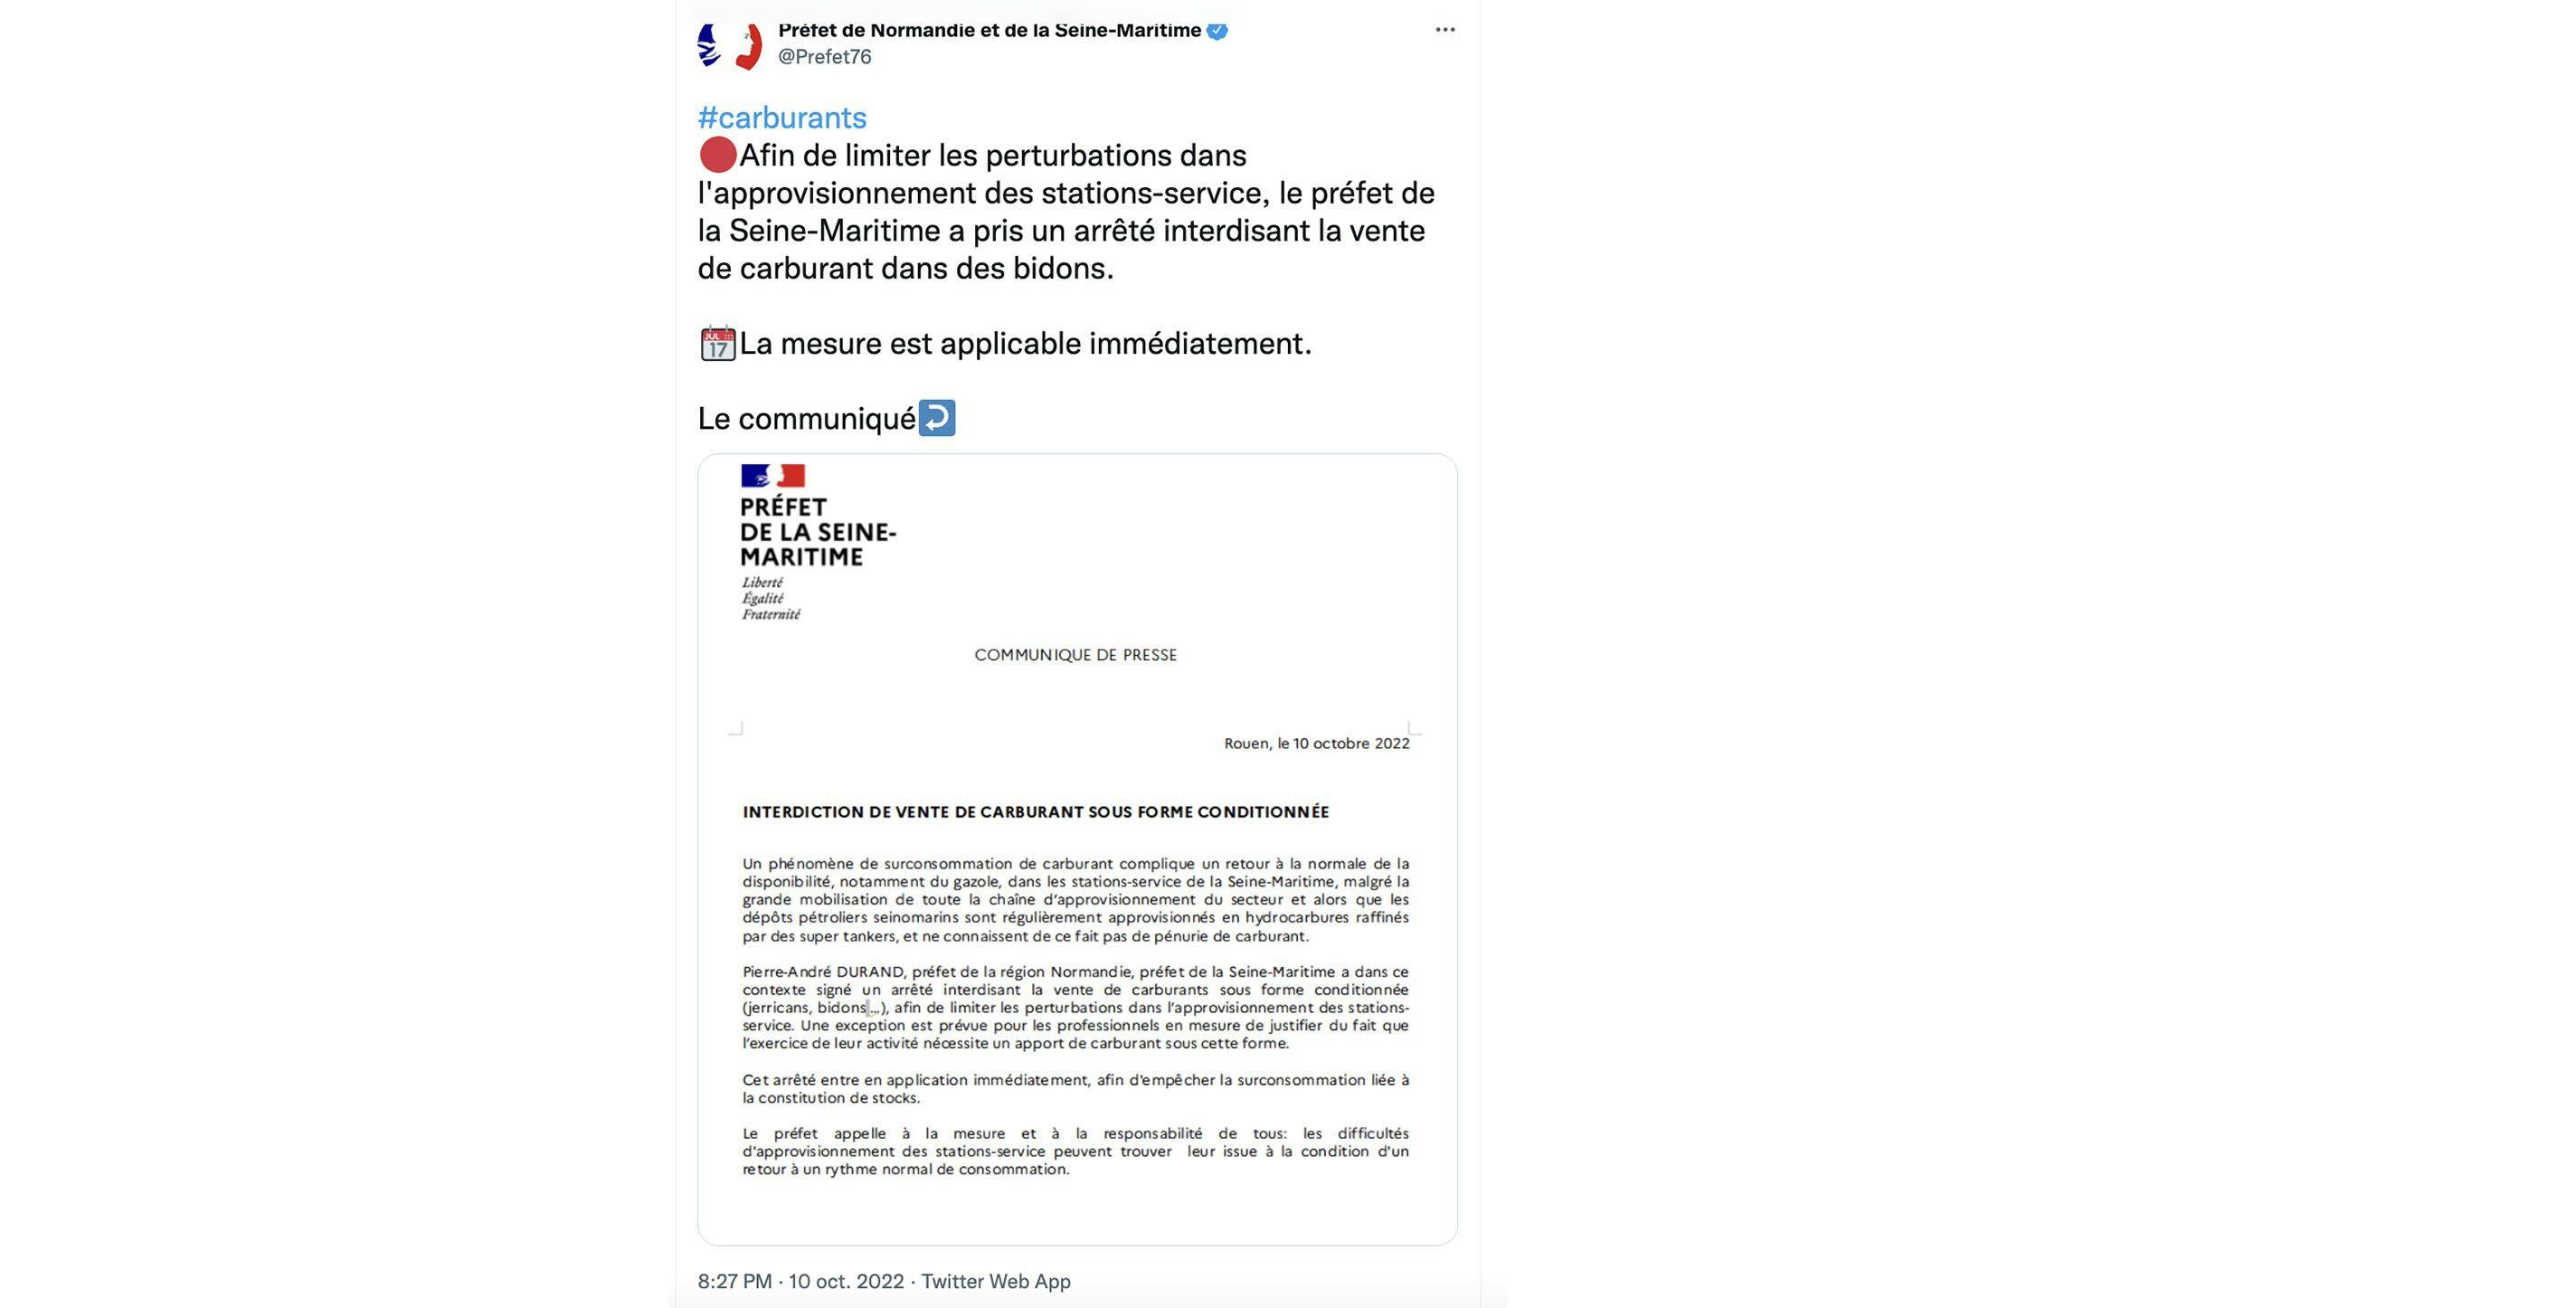 Tweet annonçant l'arrêté en Seine-Maritime.